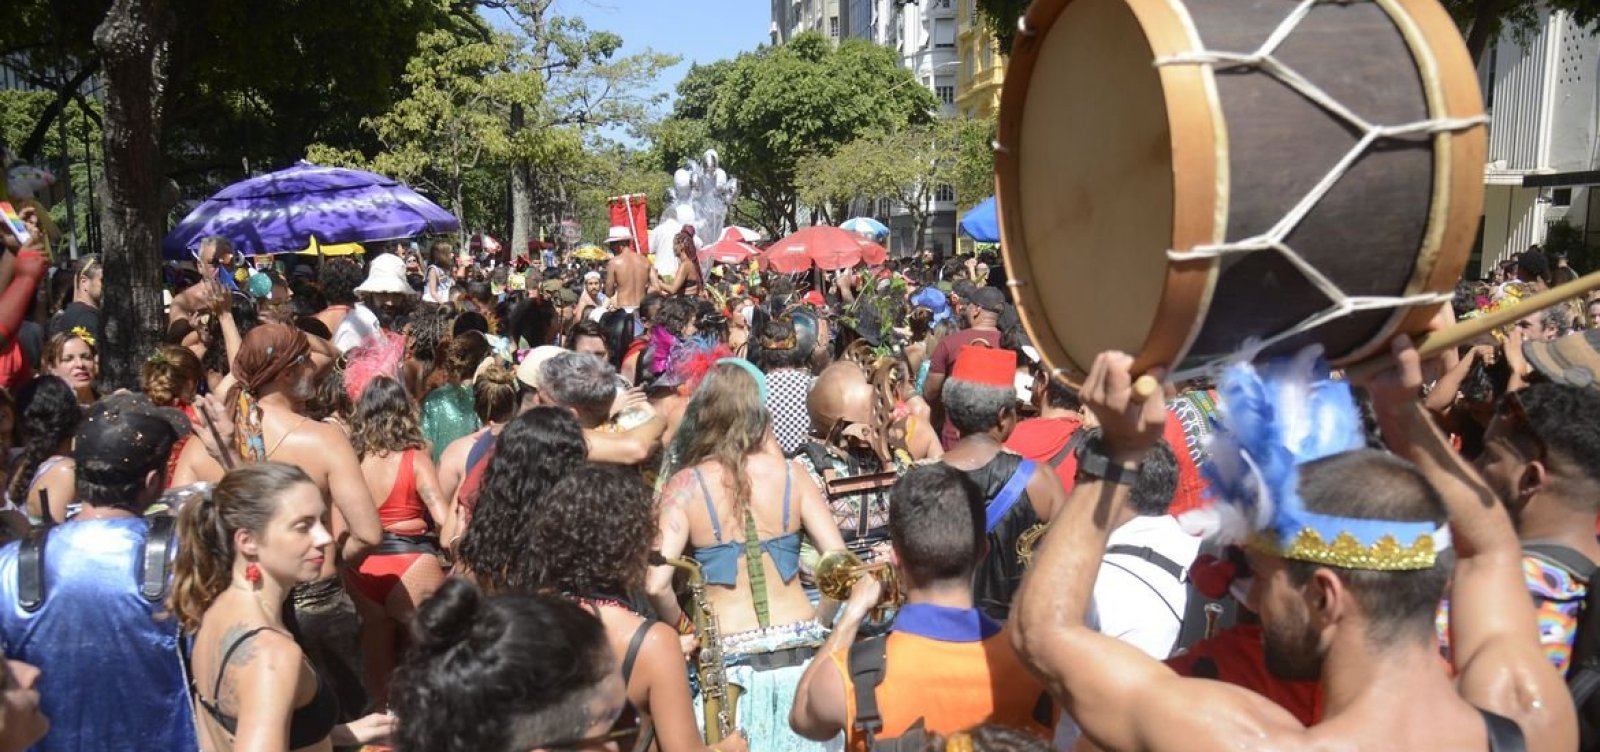  Carnaval fora de época no Rio também tem blocos na rua